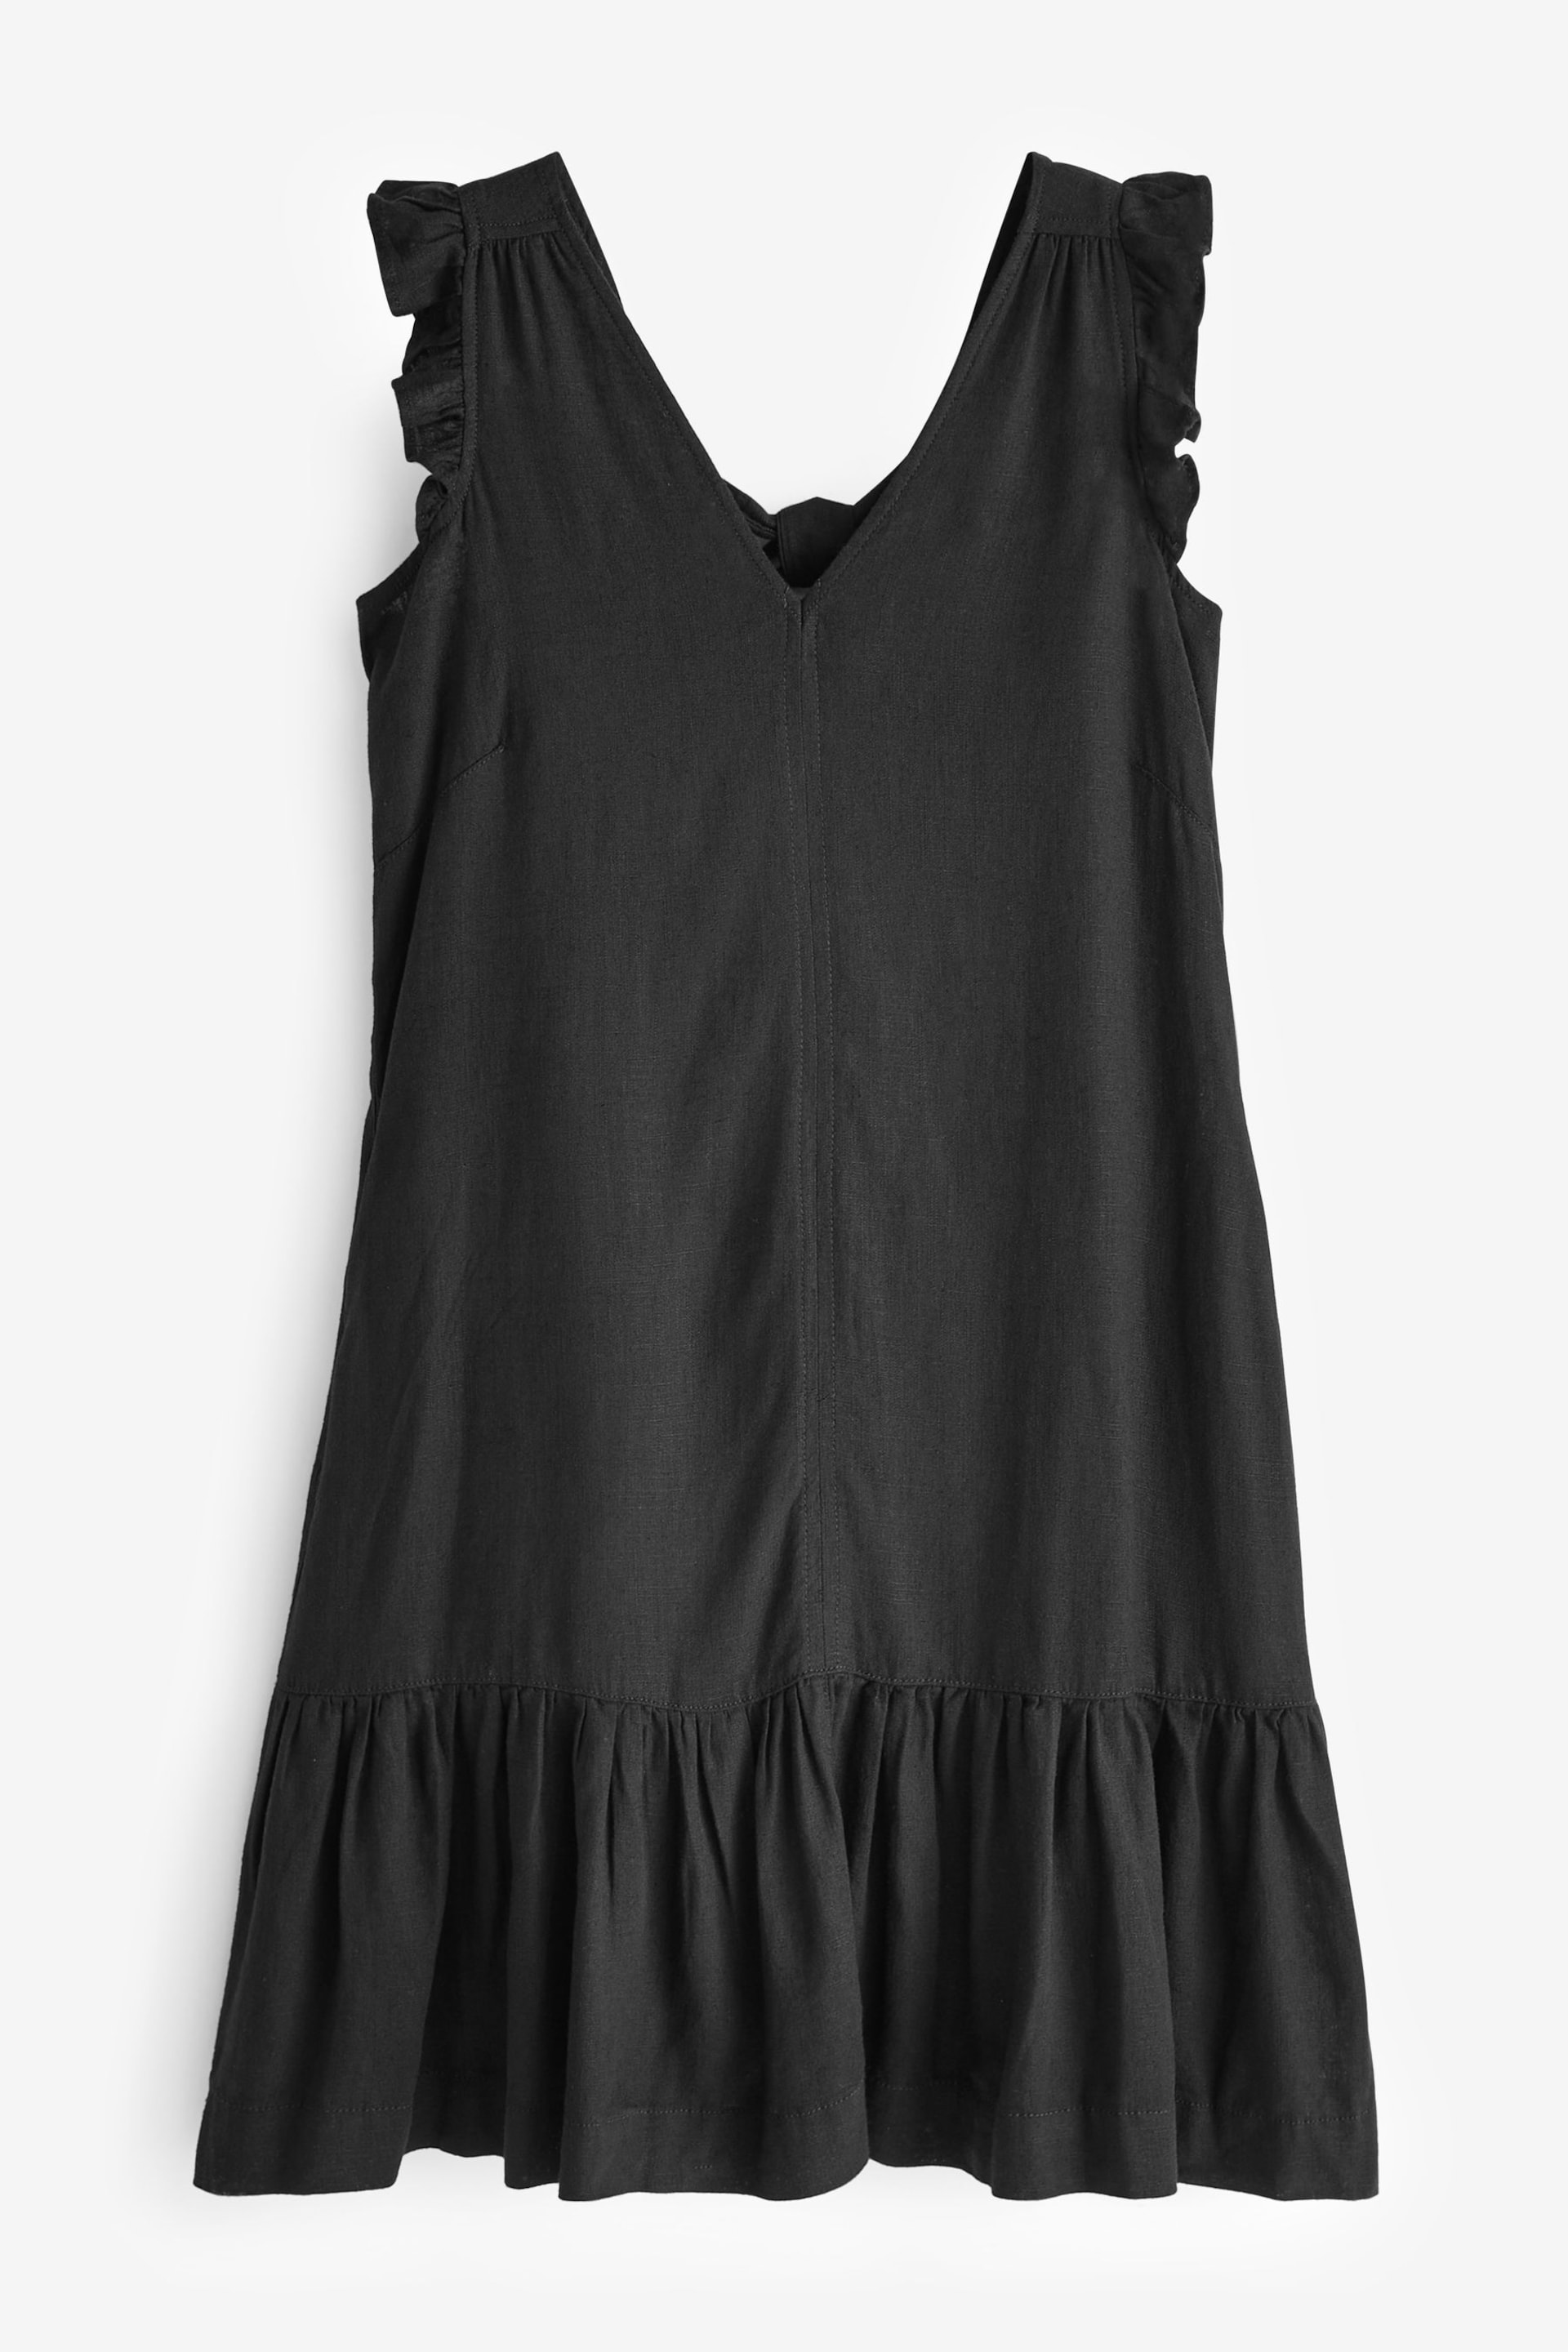 Black Linen V-Neck Blend Summer Sleeveless Shift Dress - Image 5 of 6